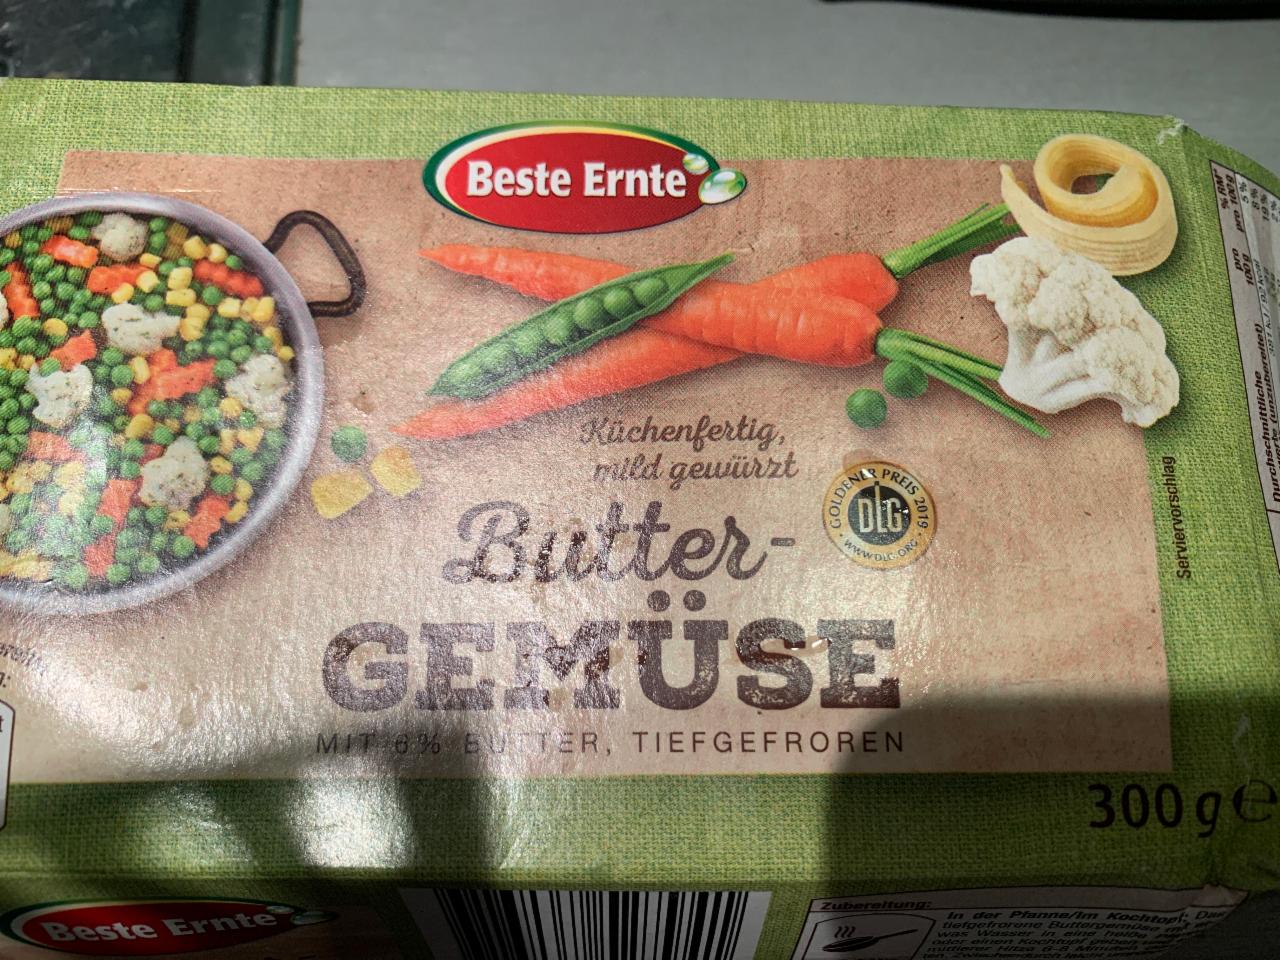 Фото - Заморожені овочі Butter Gemüse Beste Ernte